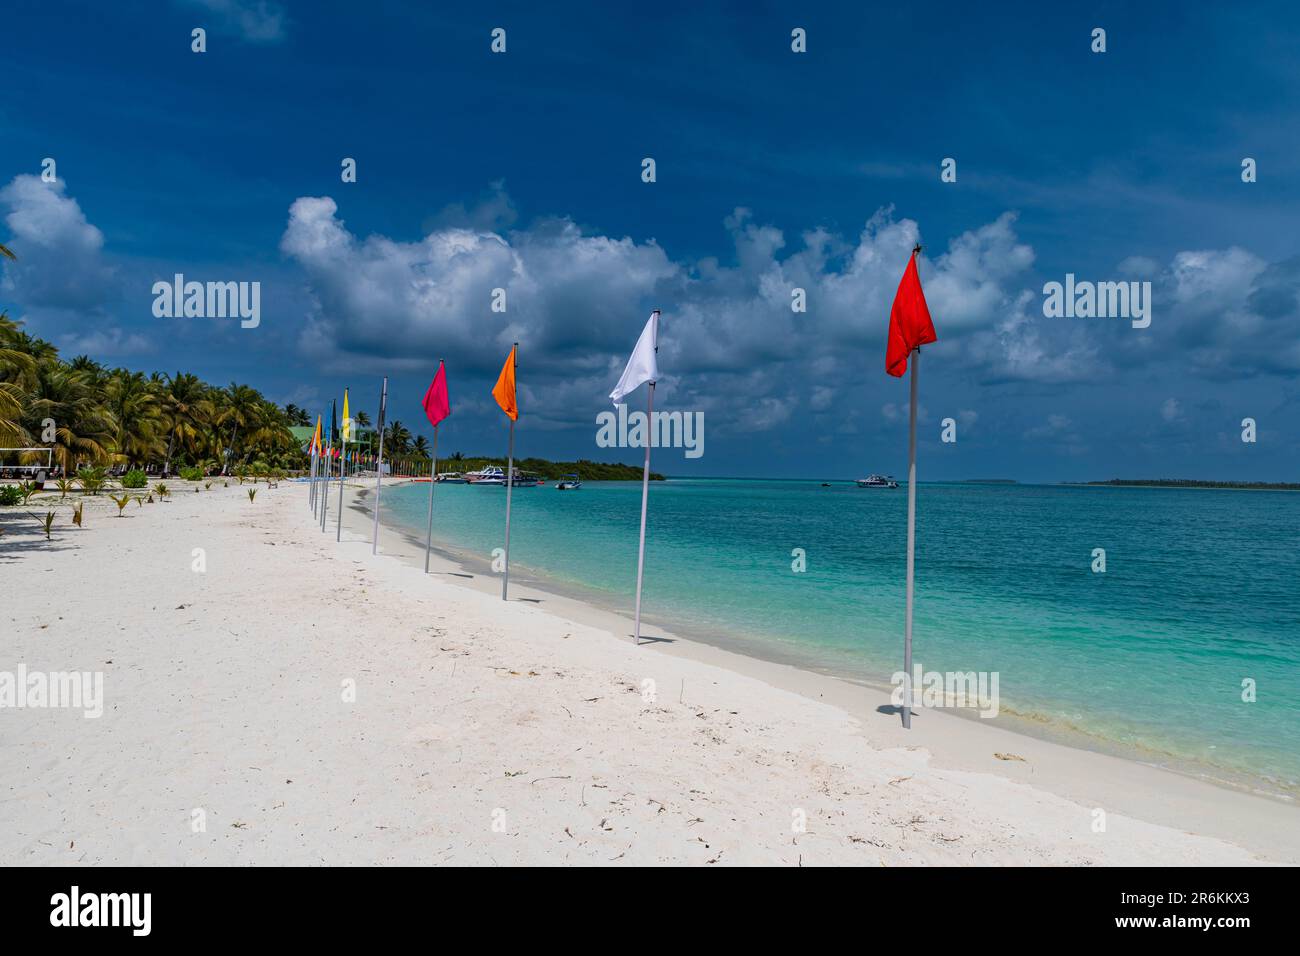 Plage de sable blanc avec de nombreux drapeaux, île de Bangaram, archipel de Lakshadweep, territoire de l'Union de l'Inde, Océan Indien, Asie Banque D'Images